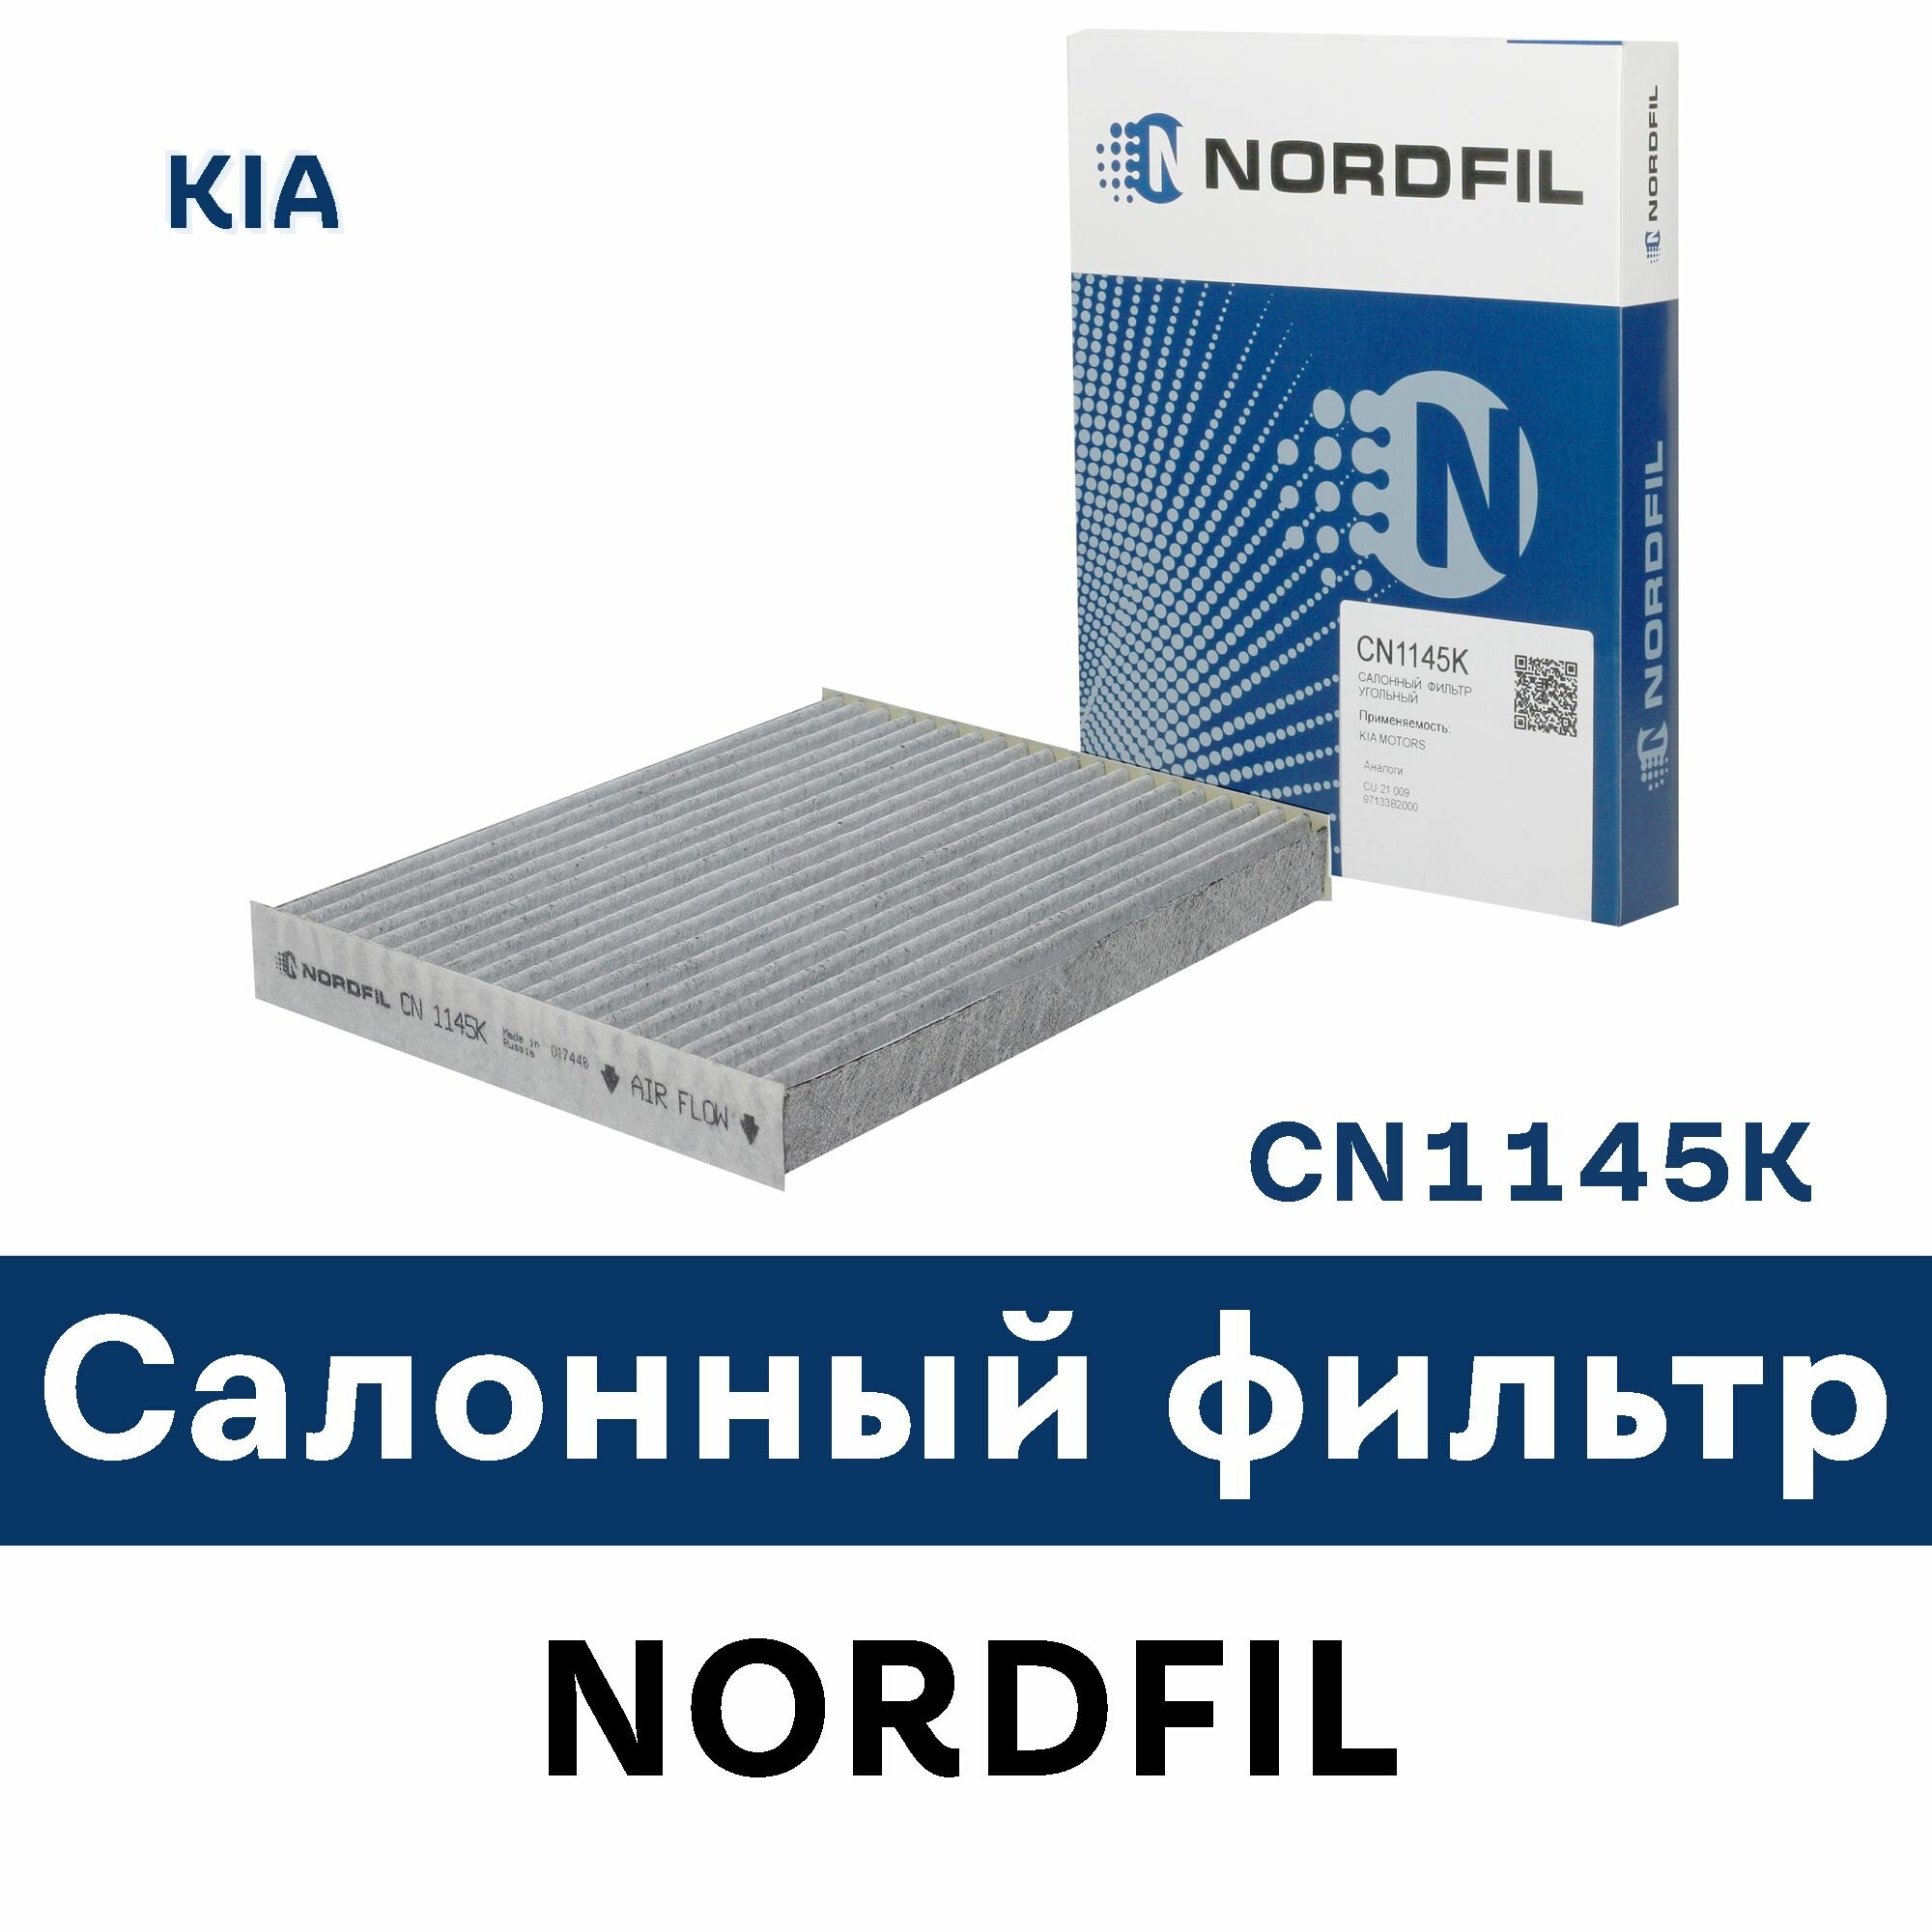 Салонный фильтр для KIA SOUL II (PS) CN1145K NORDFIL